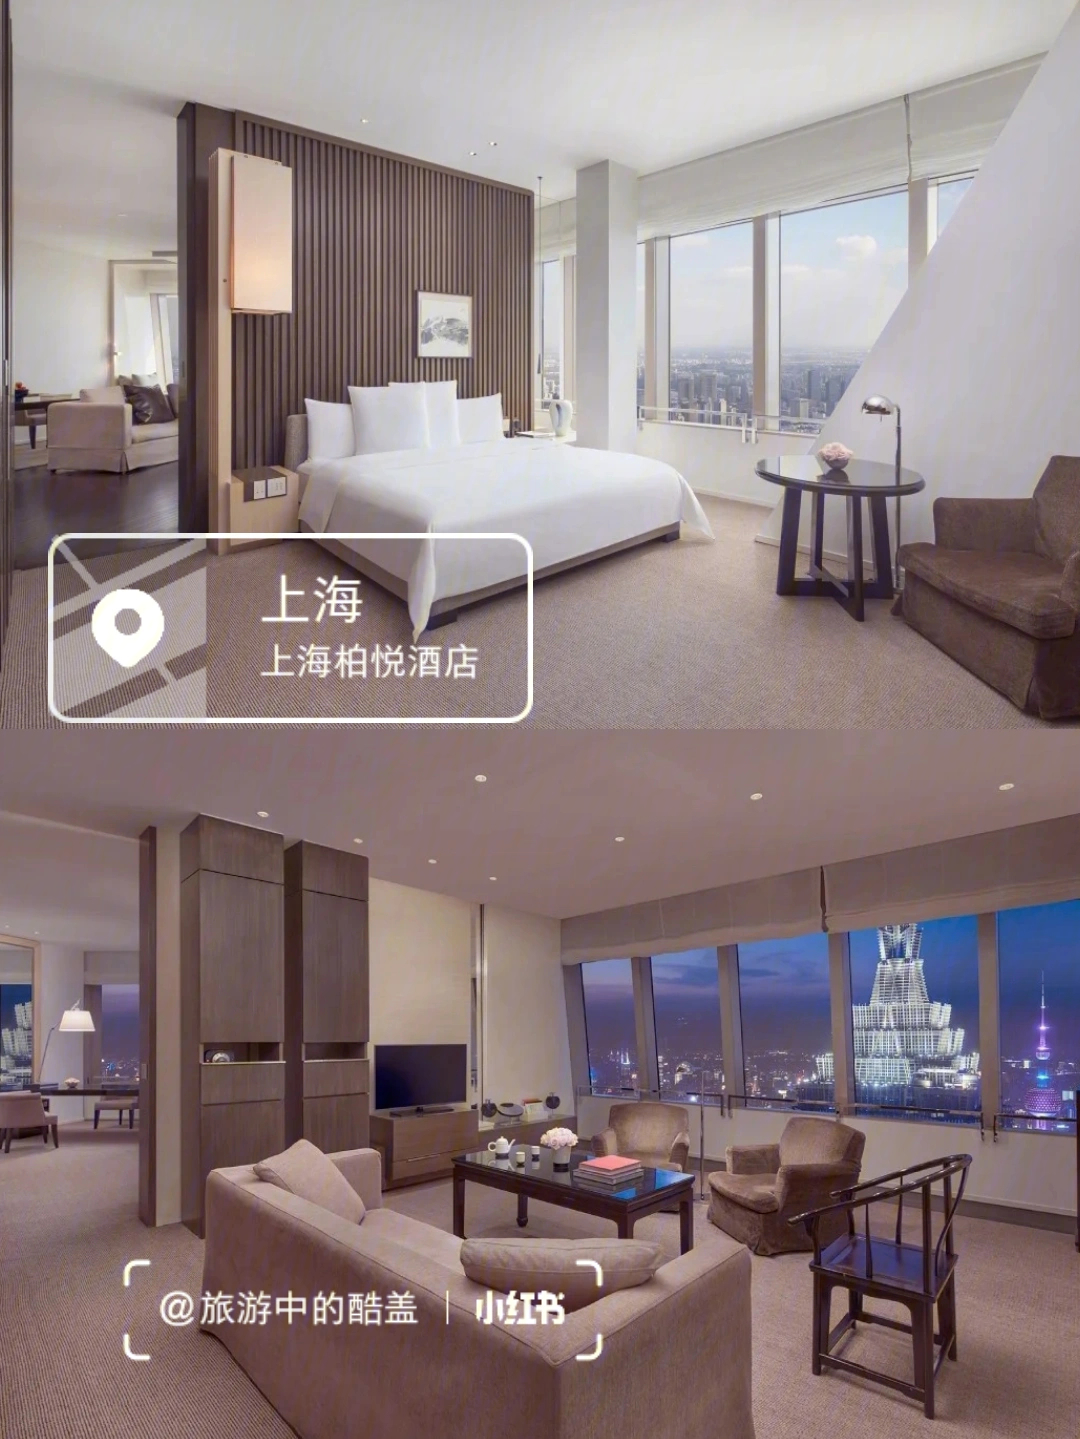 上海柏悦酒店logo图片